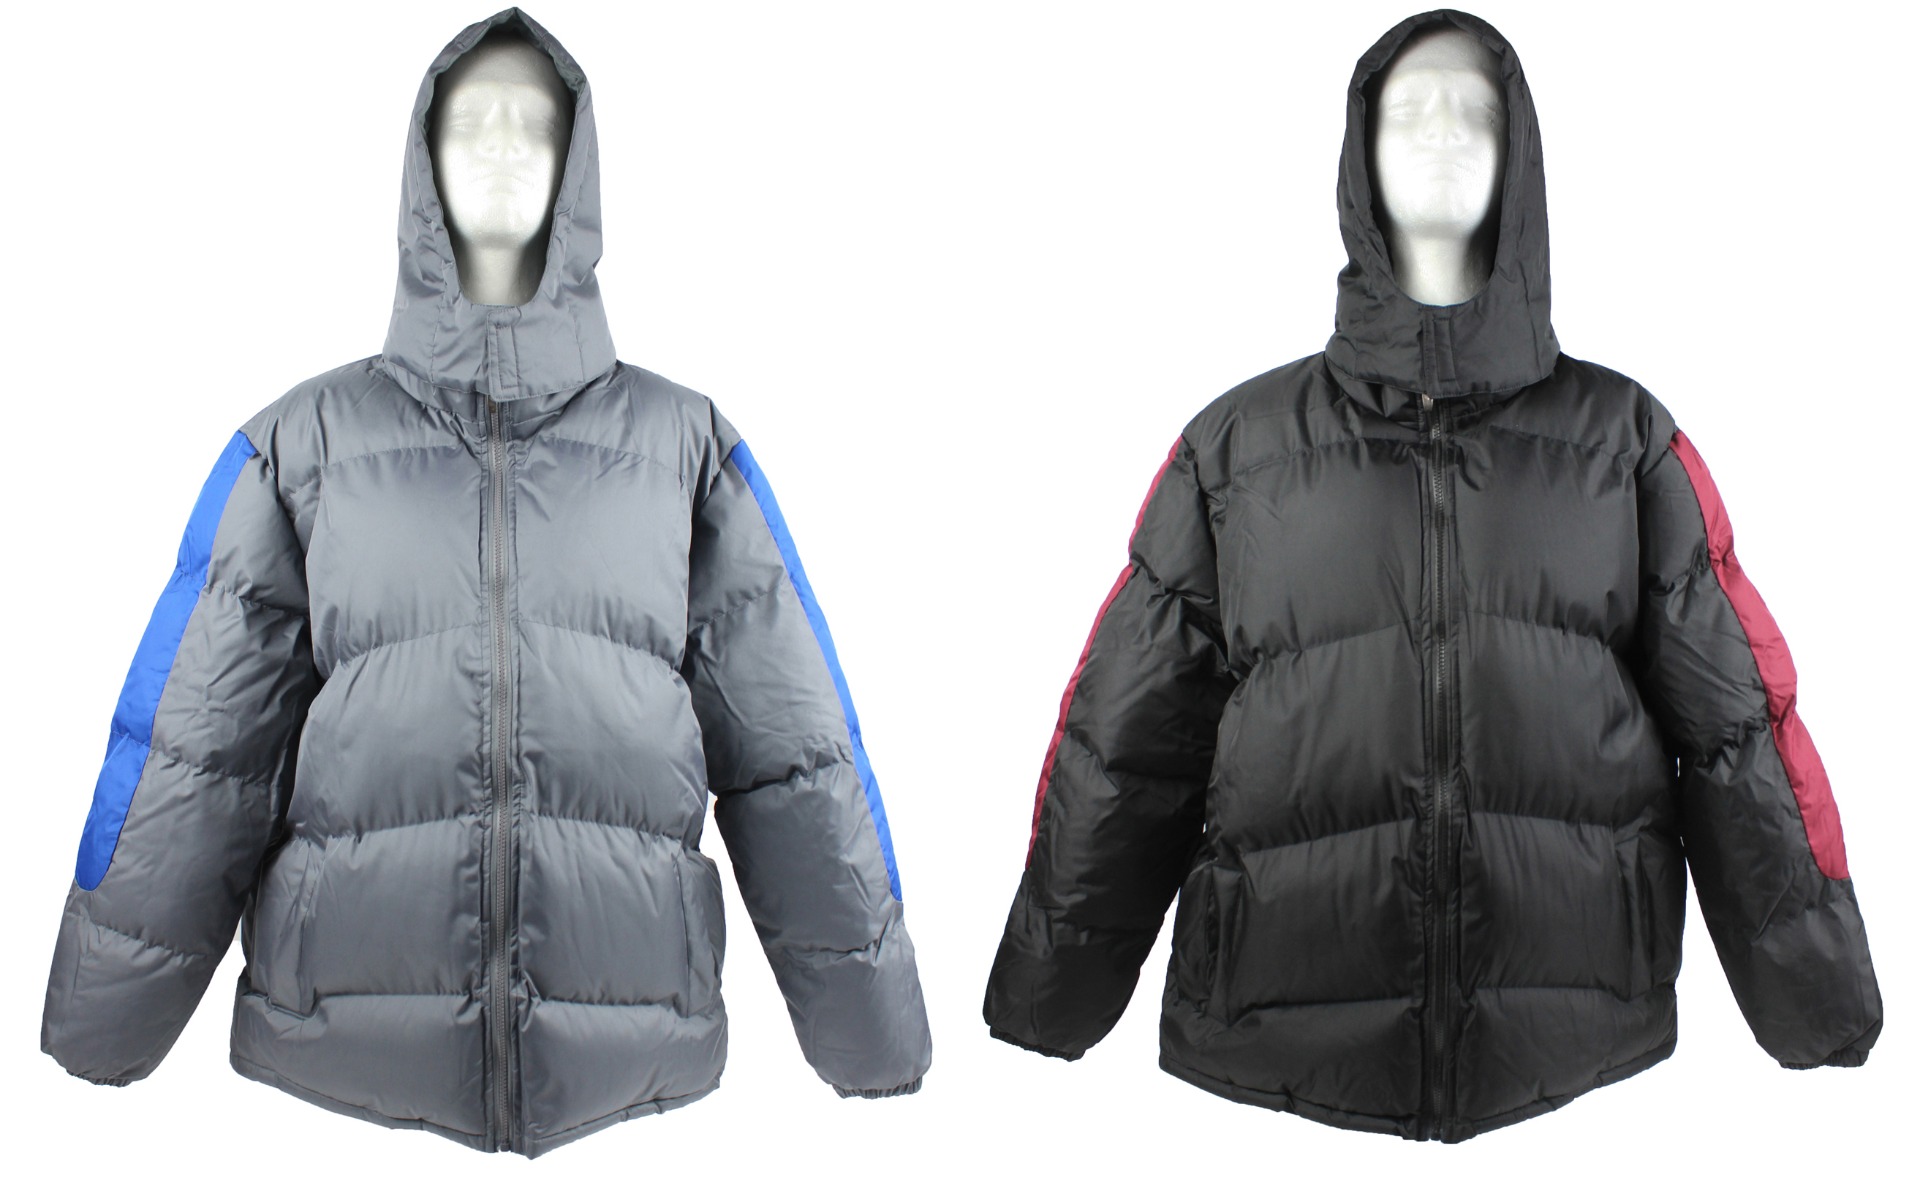 Men's Winter Bubble Ski JACKETs w/ Detachable Hood - Sizes Medium-XXL - Choose Your Color(s)